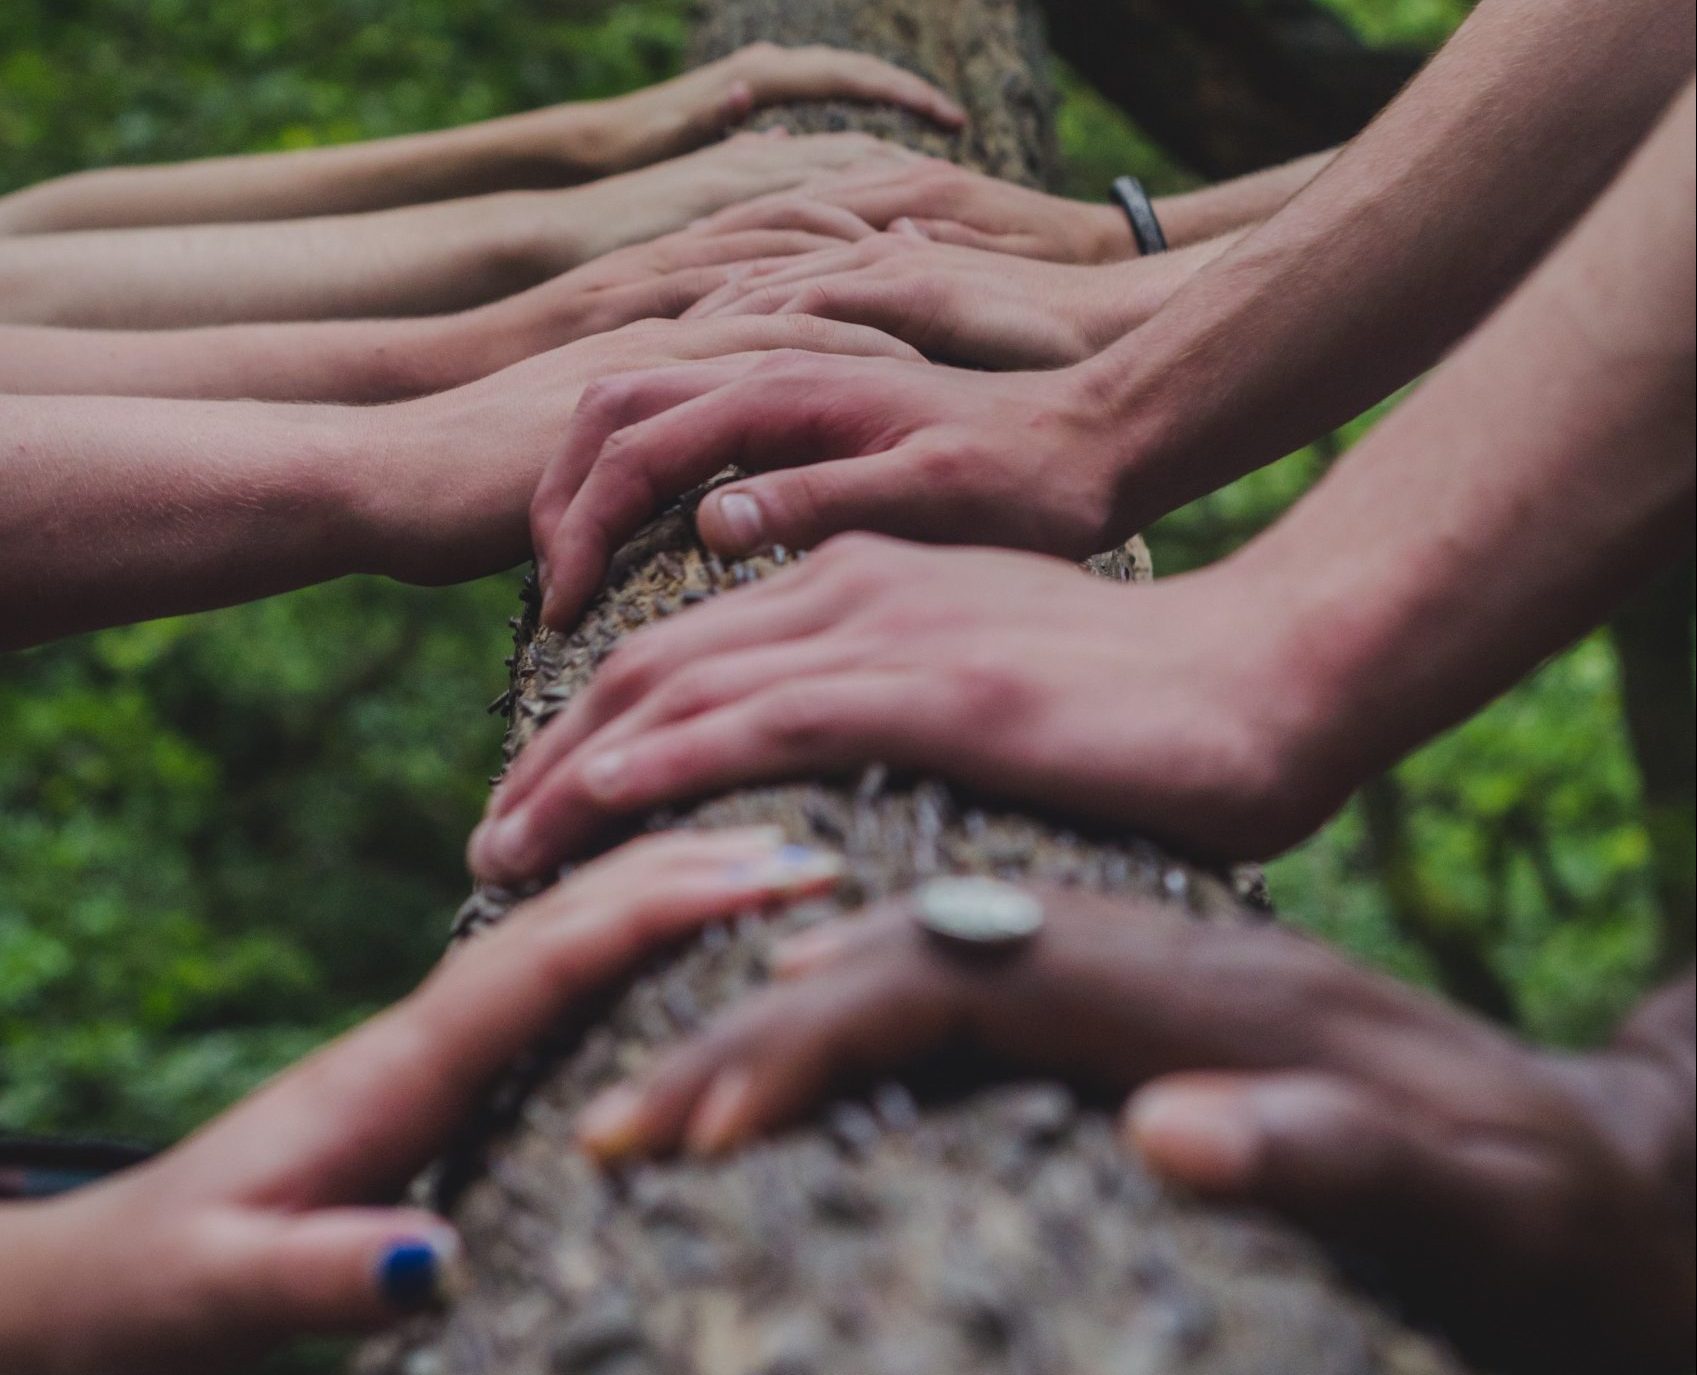 Soziale Nachhaltigkeit Visualisierung: Menschen haben gemeinsam ihre Hände auf einen Baumstamm gelegt und präsentieren sich als zusammengehörige Gruppe